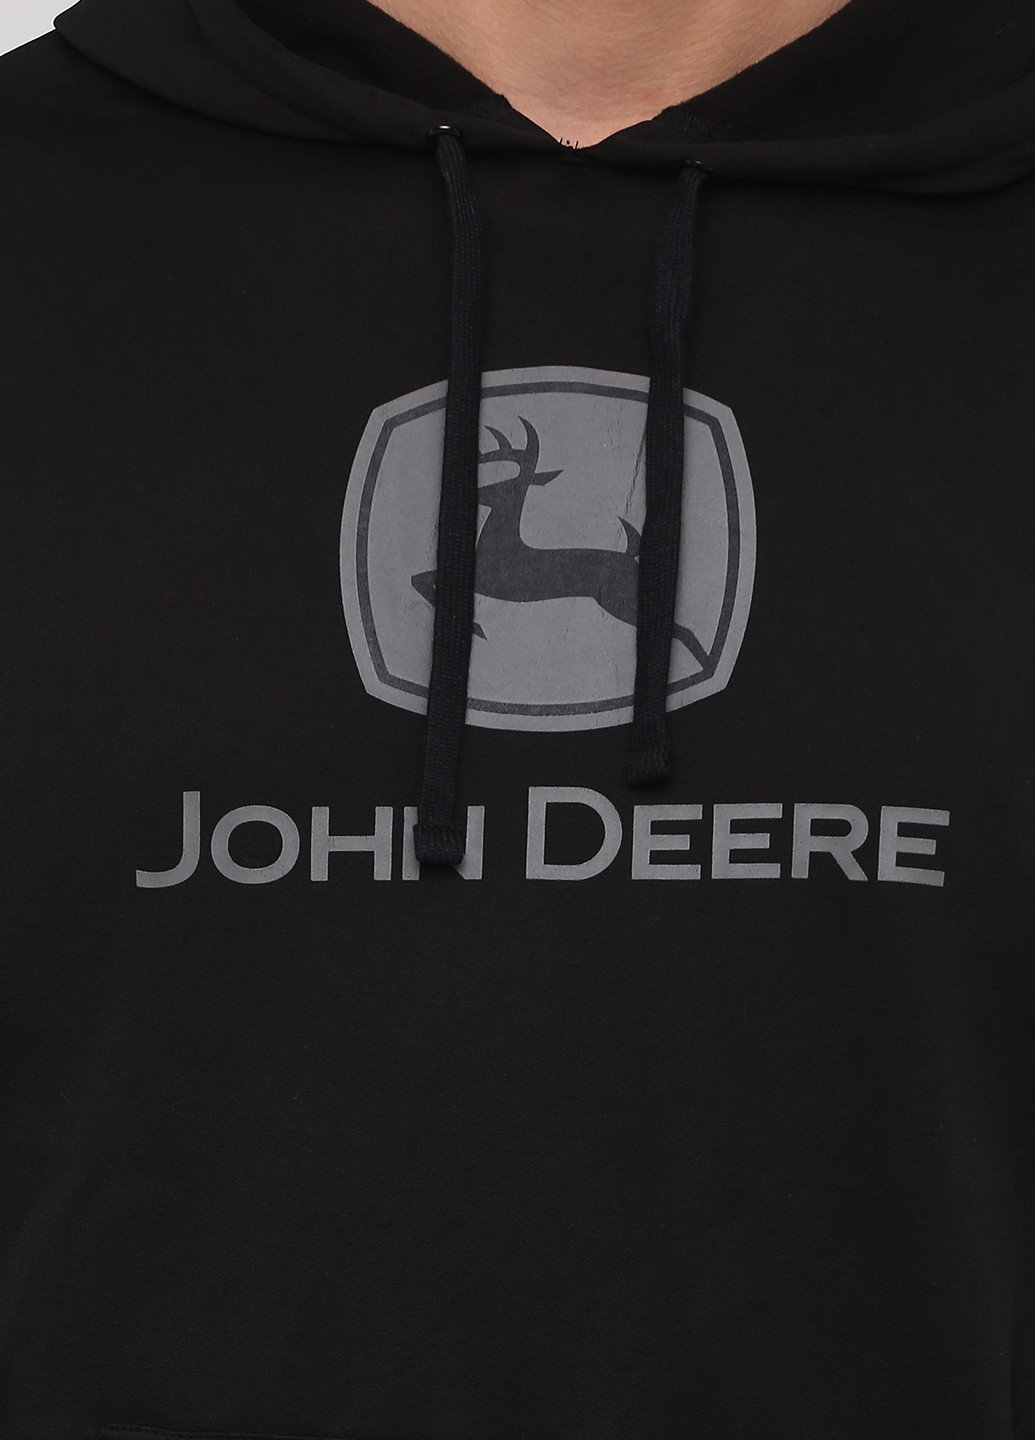 Худи John Deer надписи чёрные спортивные хлопок